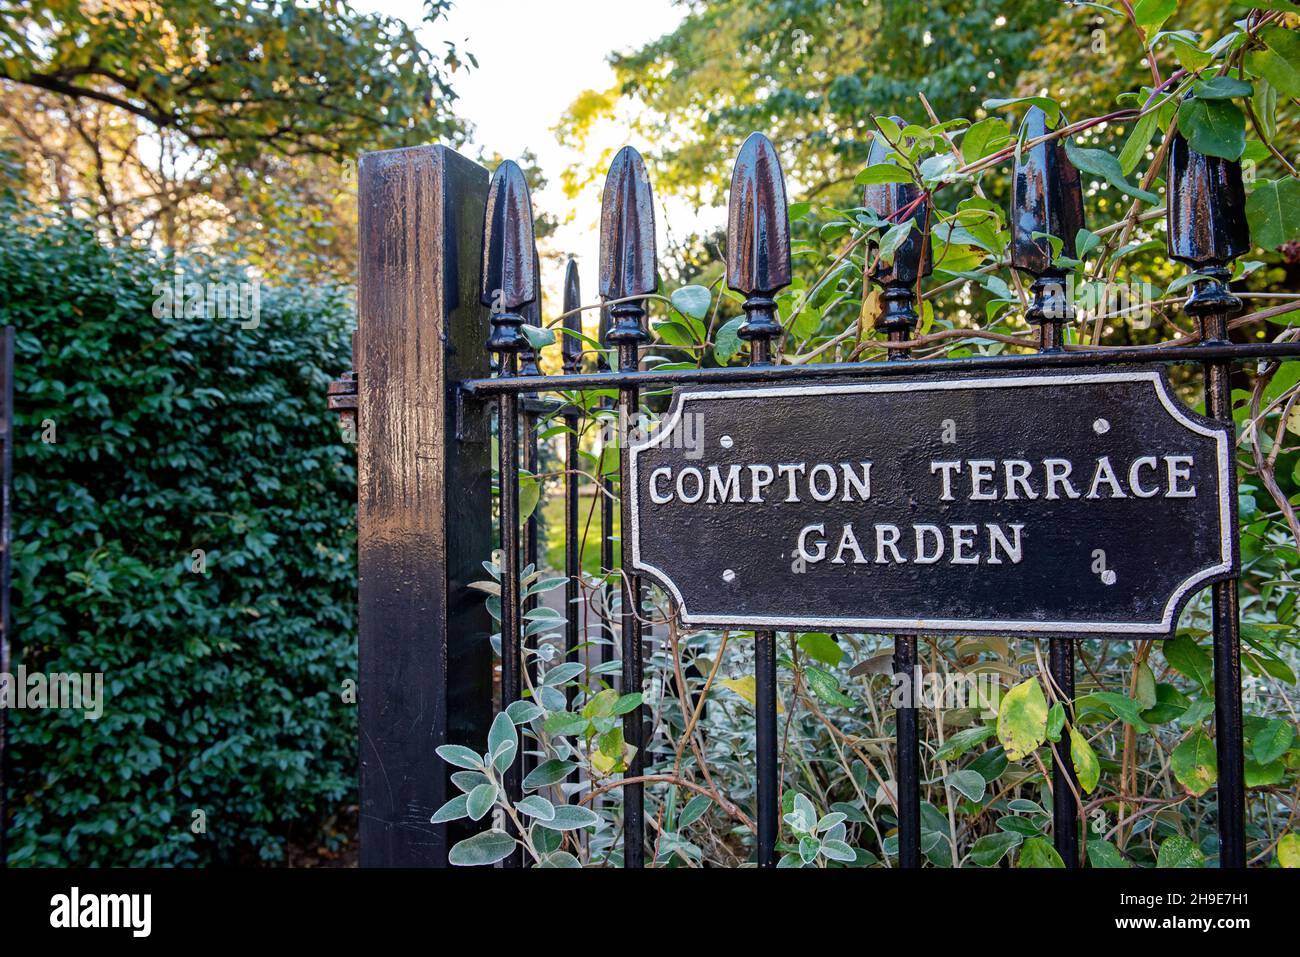 Compton Terrace Garden Schild auf schmiedeeisernem Geländer, das den Eingang zu den Gärten zeigt, London Borough of Islington, England, Großbritannien Stockfoto